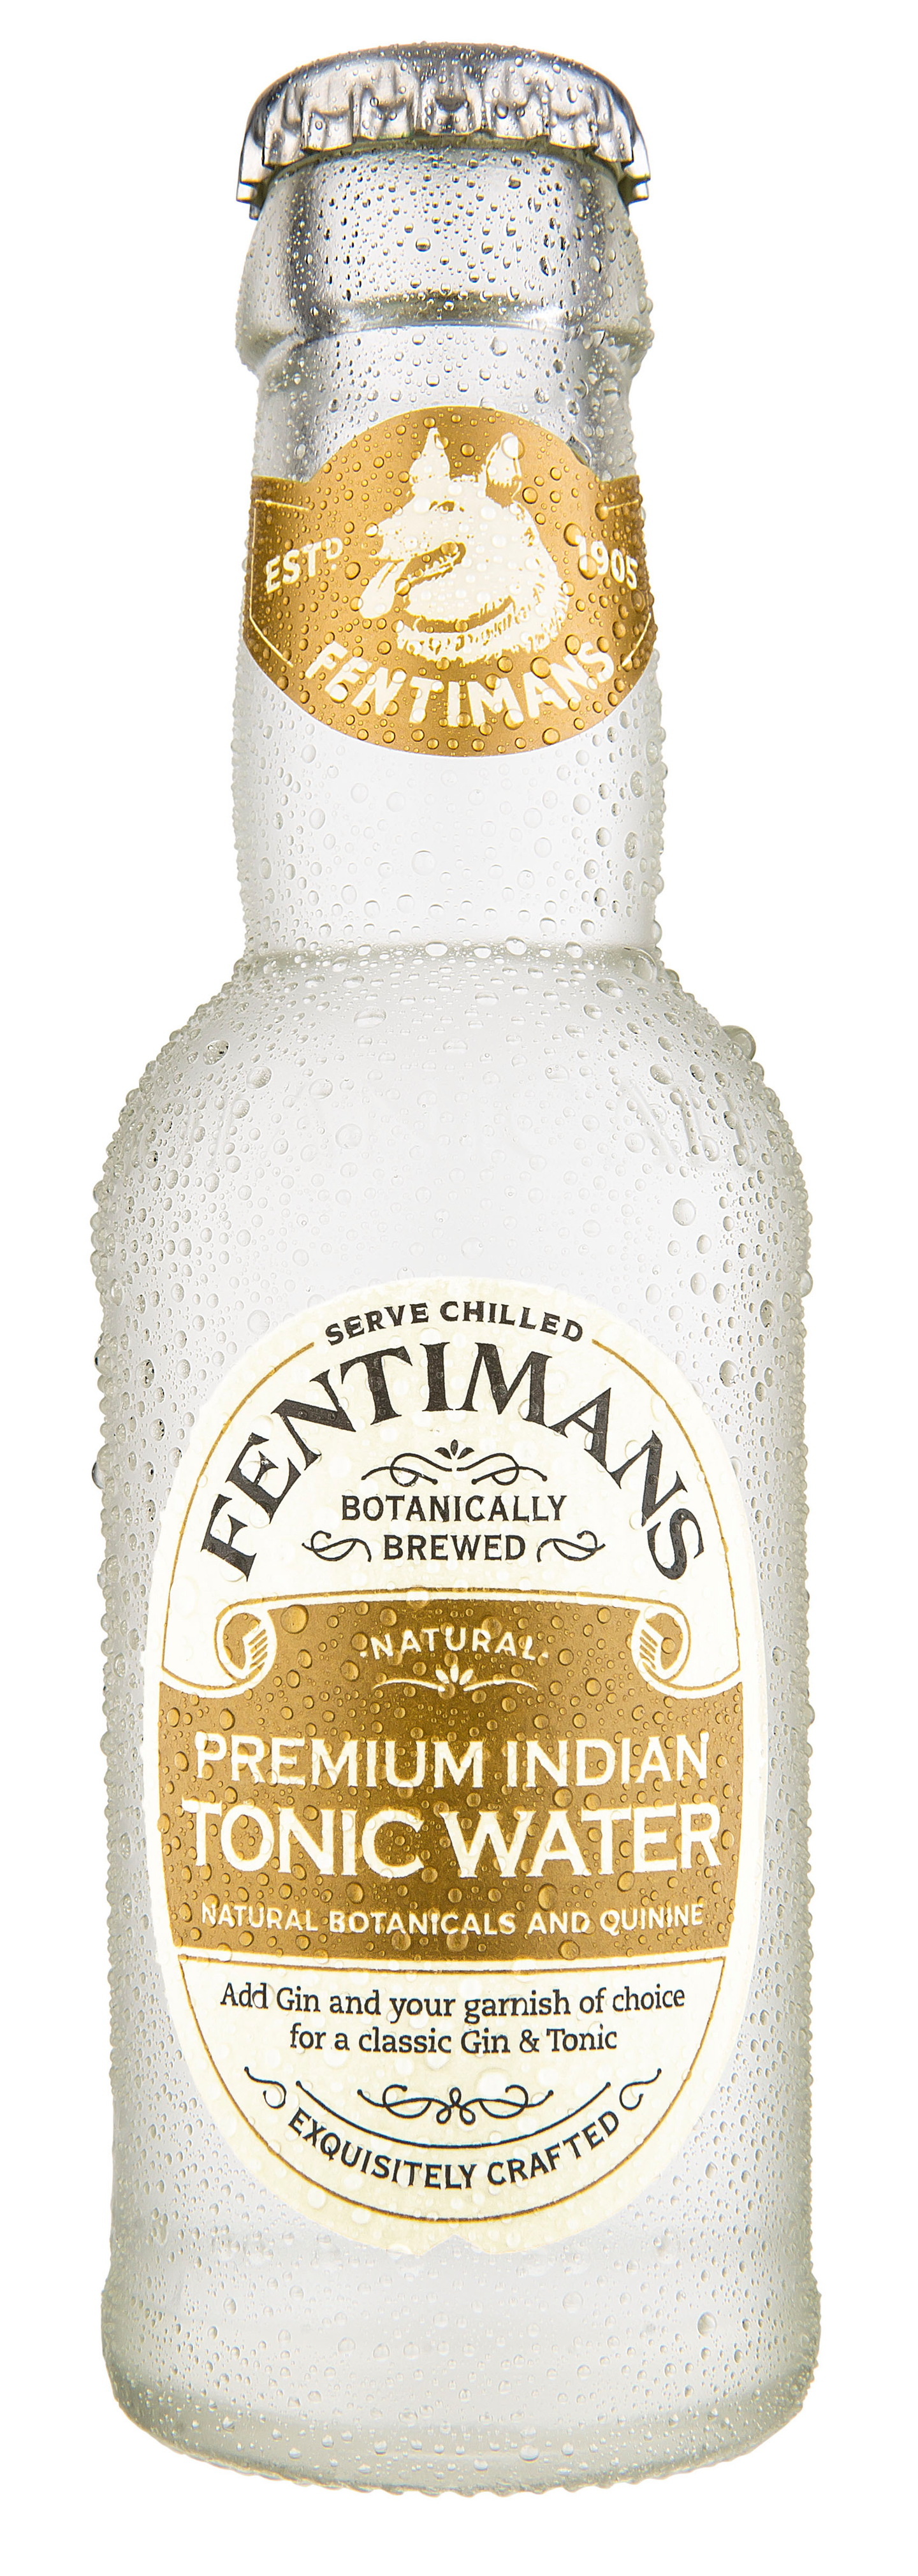 Fentimans Premium Indian Tonic Water 0,2l